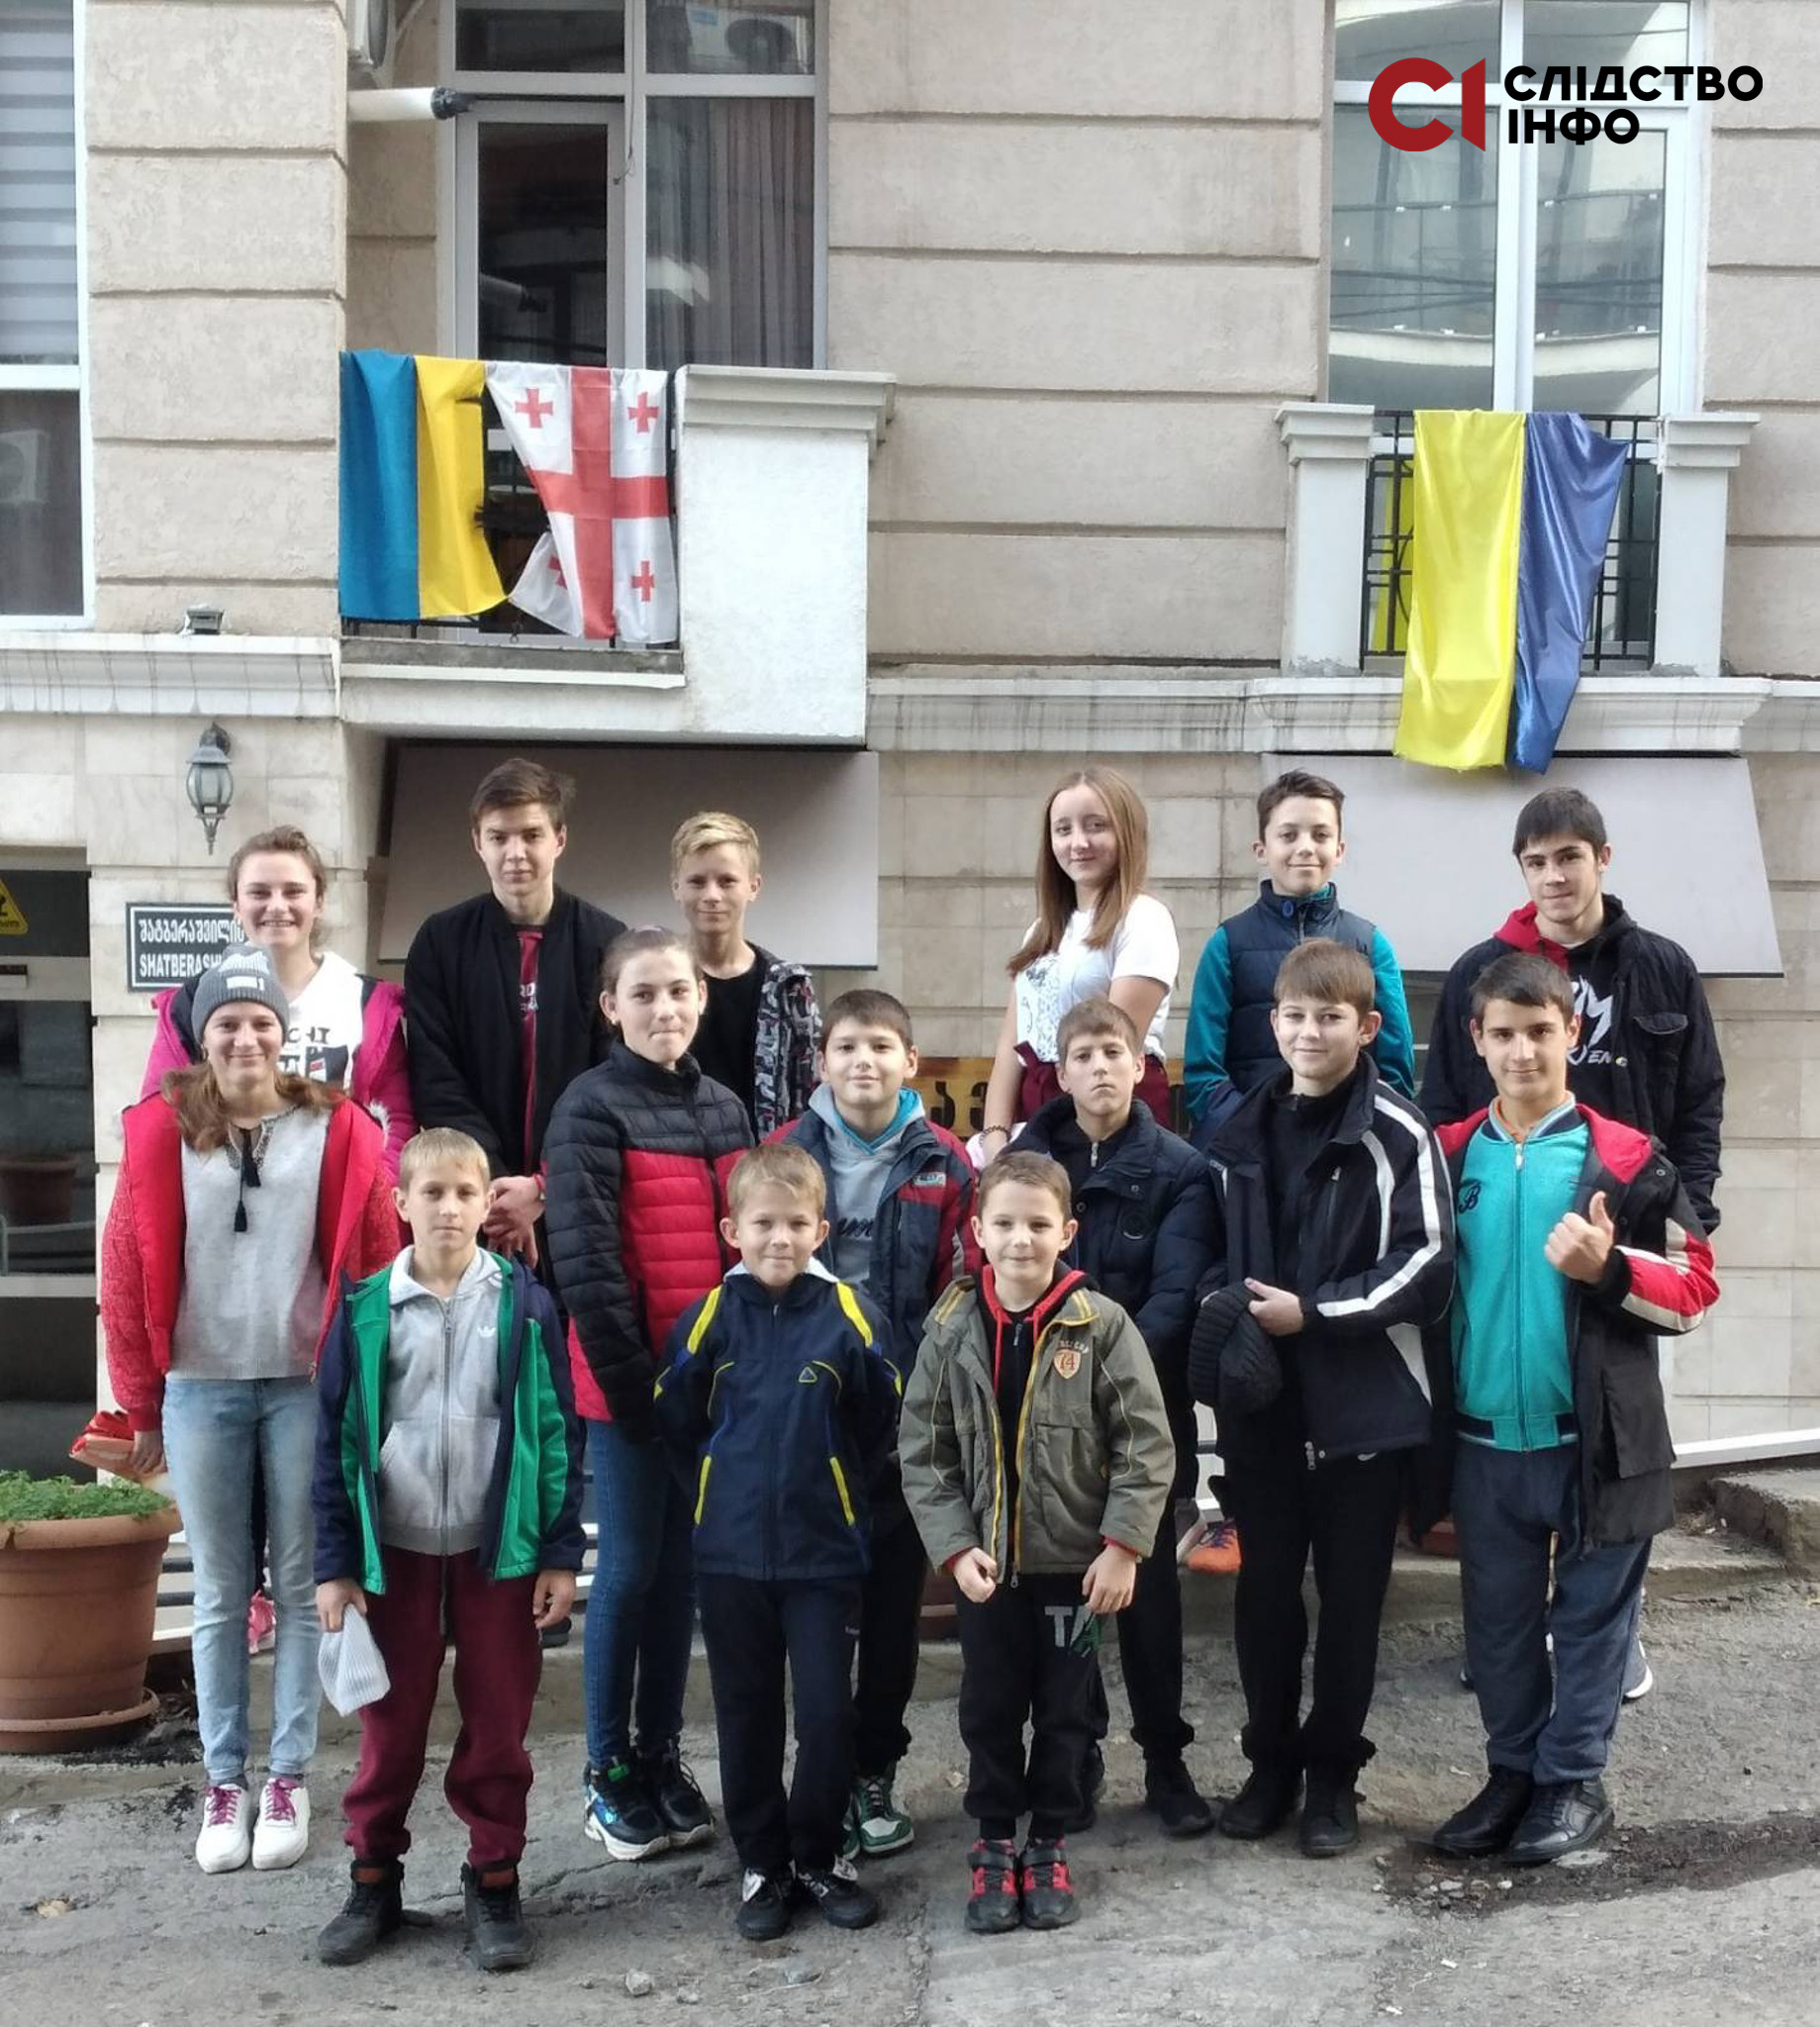 На фото 15 українських дітей, яких вдалося вивезти з Росії в Грузію. Діти стоять на вулиці, позад них будинок з двома великими вікнами, на яких висять прапори України та Грузії 